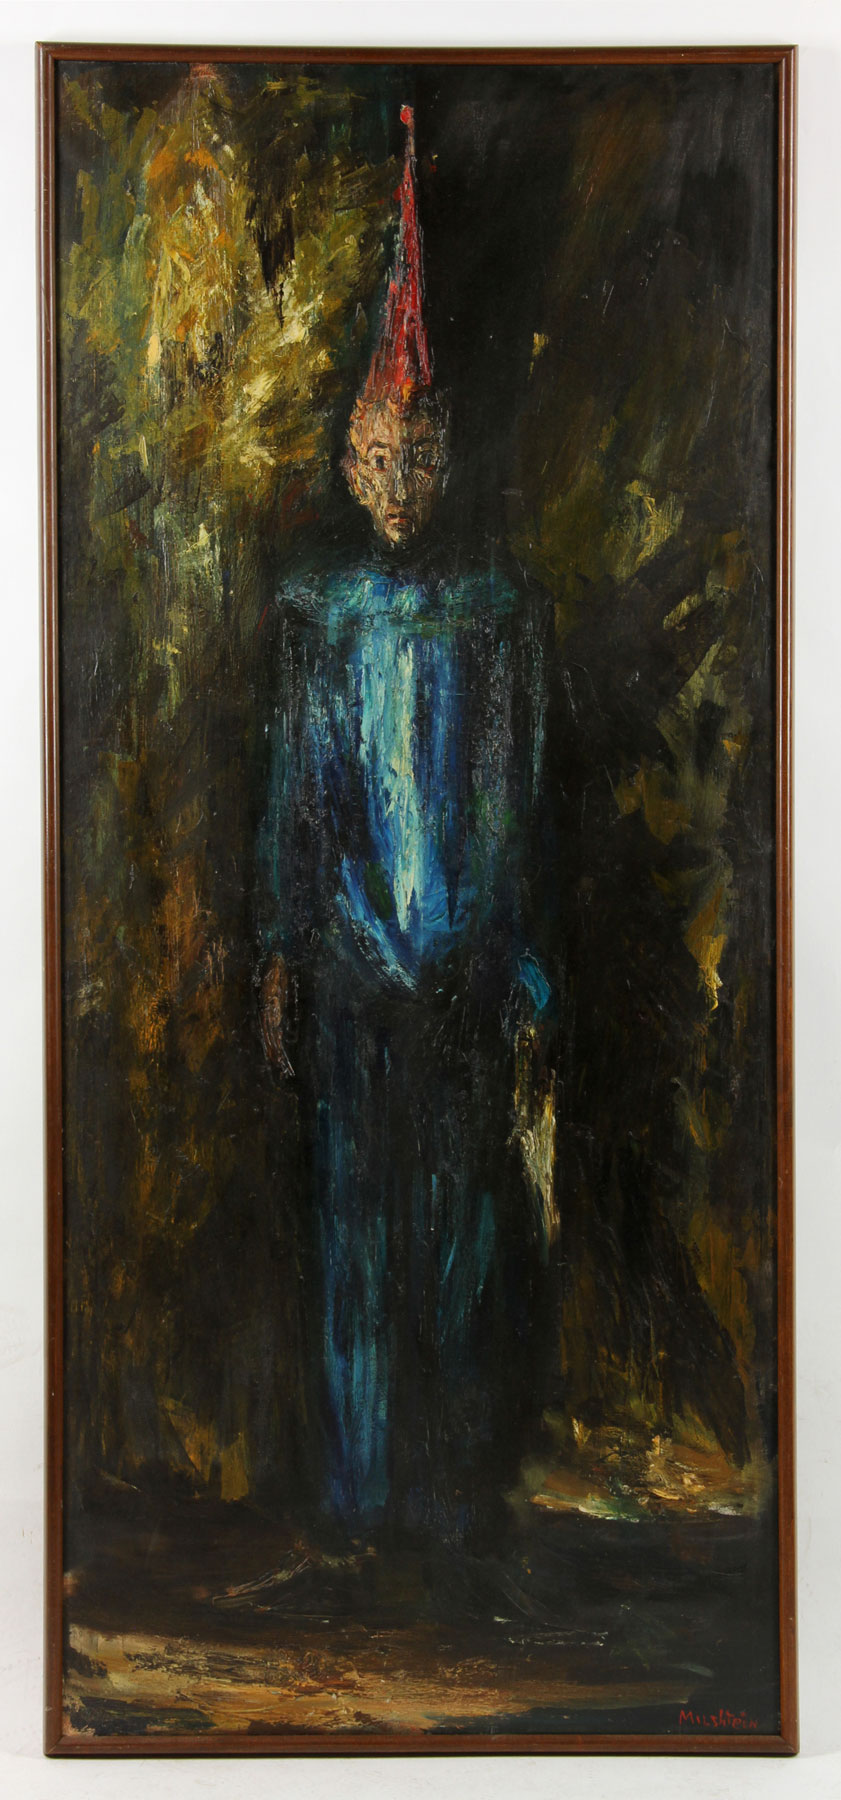 Milshtein, Clown, Oil on Canvas